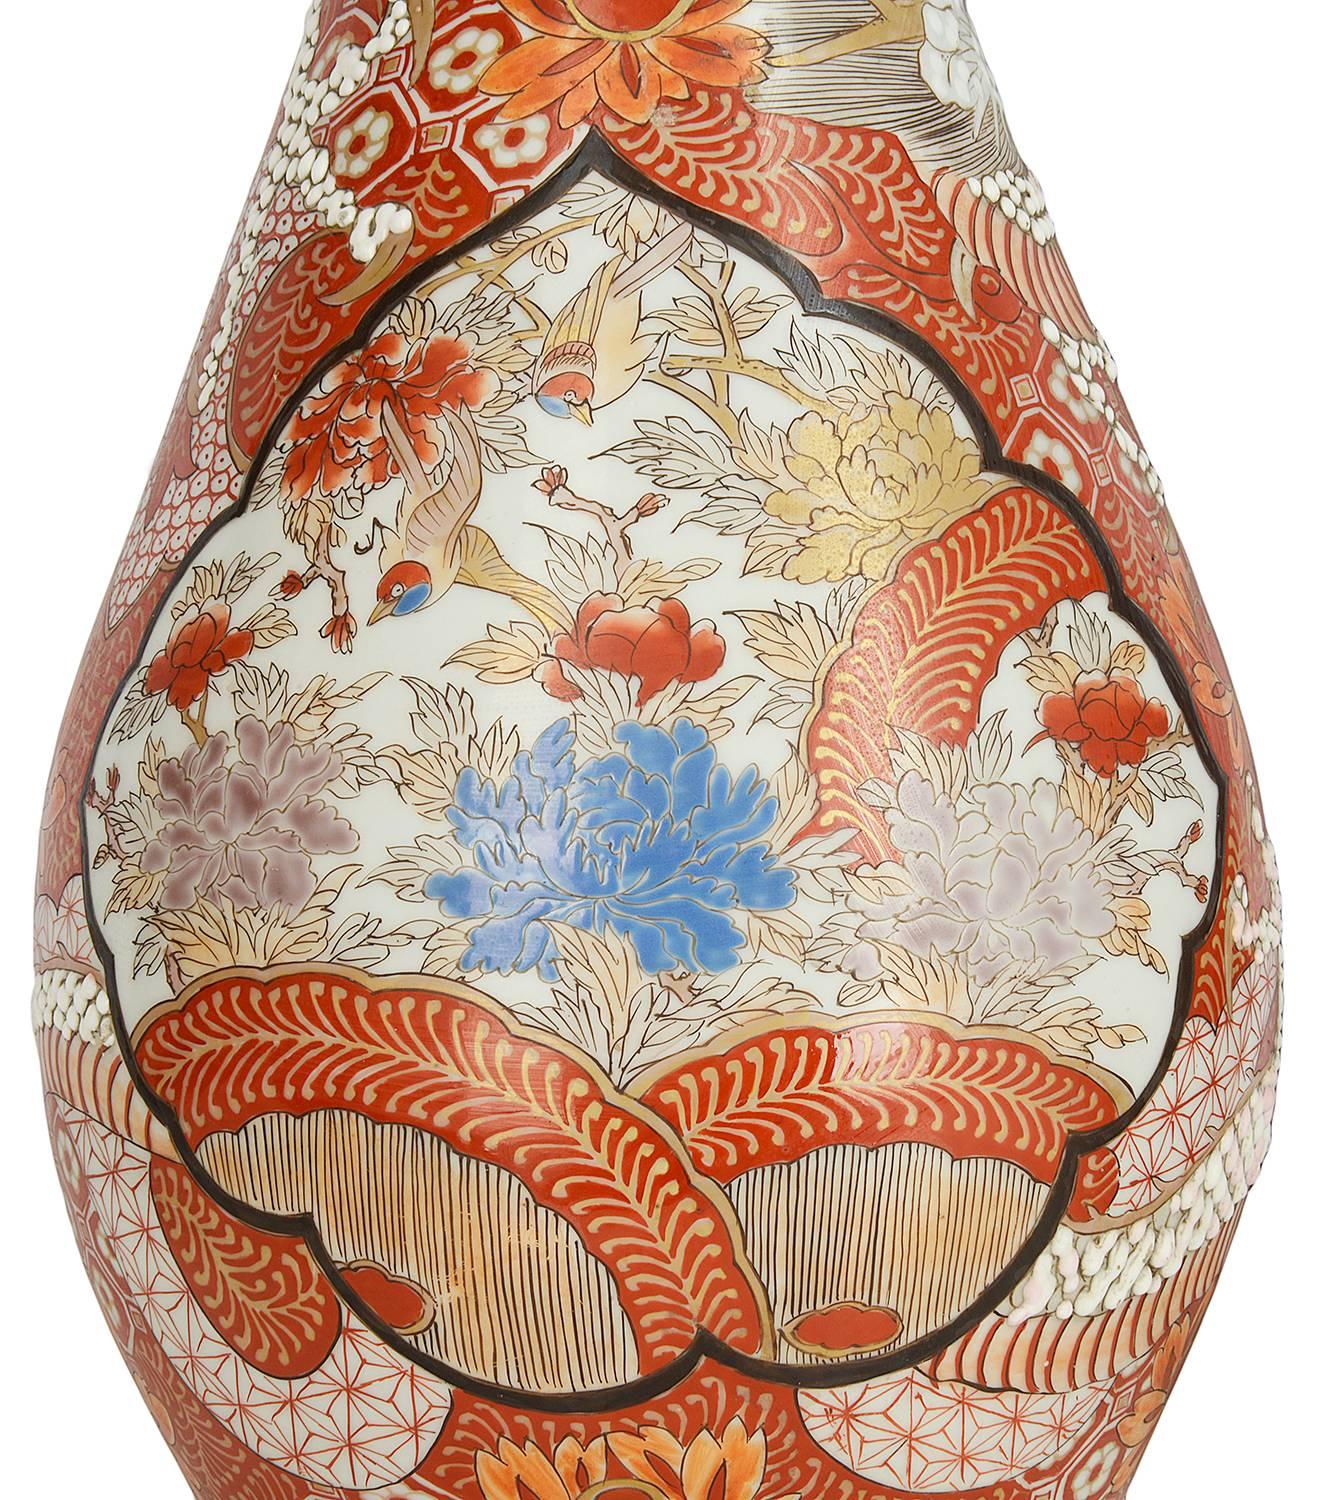 Ein dekoratives Paar japanischer Kutani-Vasen aus dem 19. Jahrhundert von guter Qualität, die jeweils mythische Drachen zeigen, die sich zwischen Blumen und Moiten um die Vasen winden.